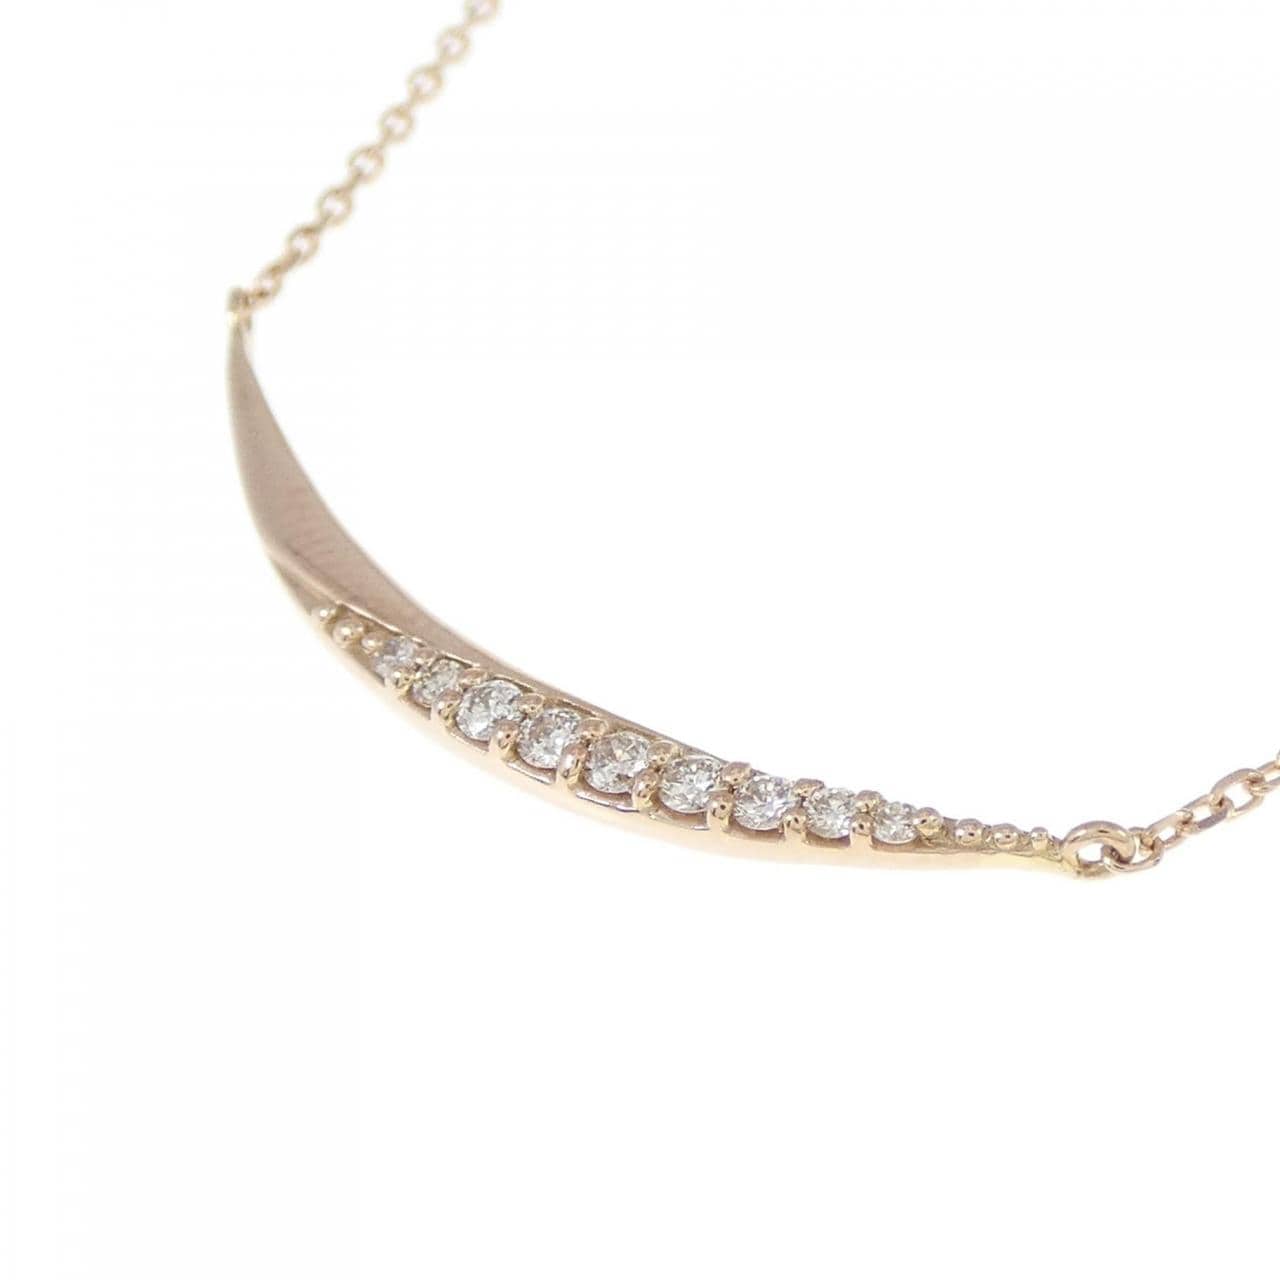 K18PG Diamond necklace